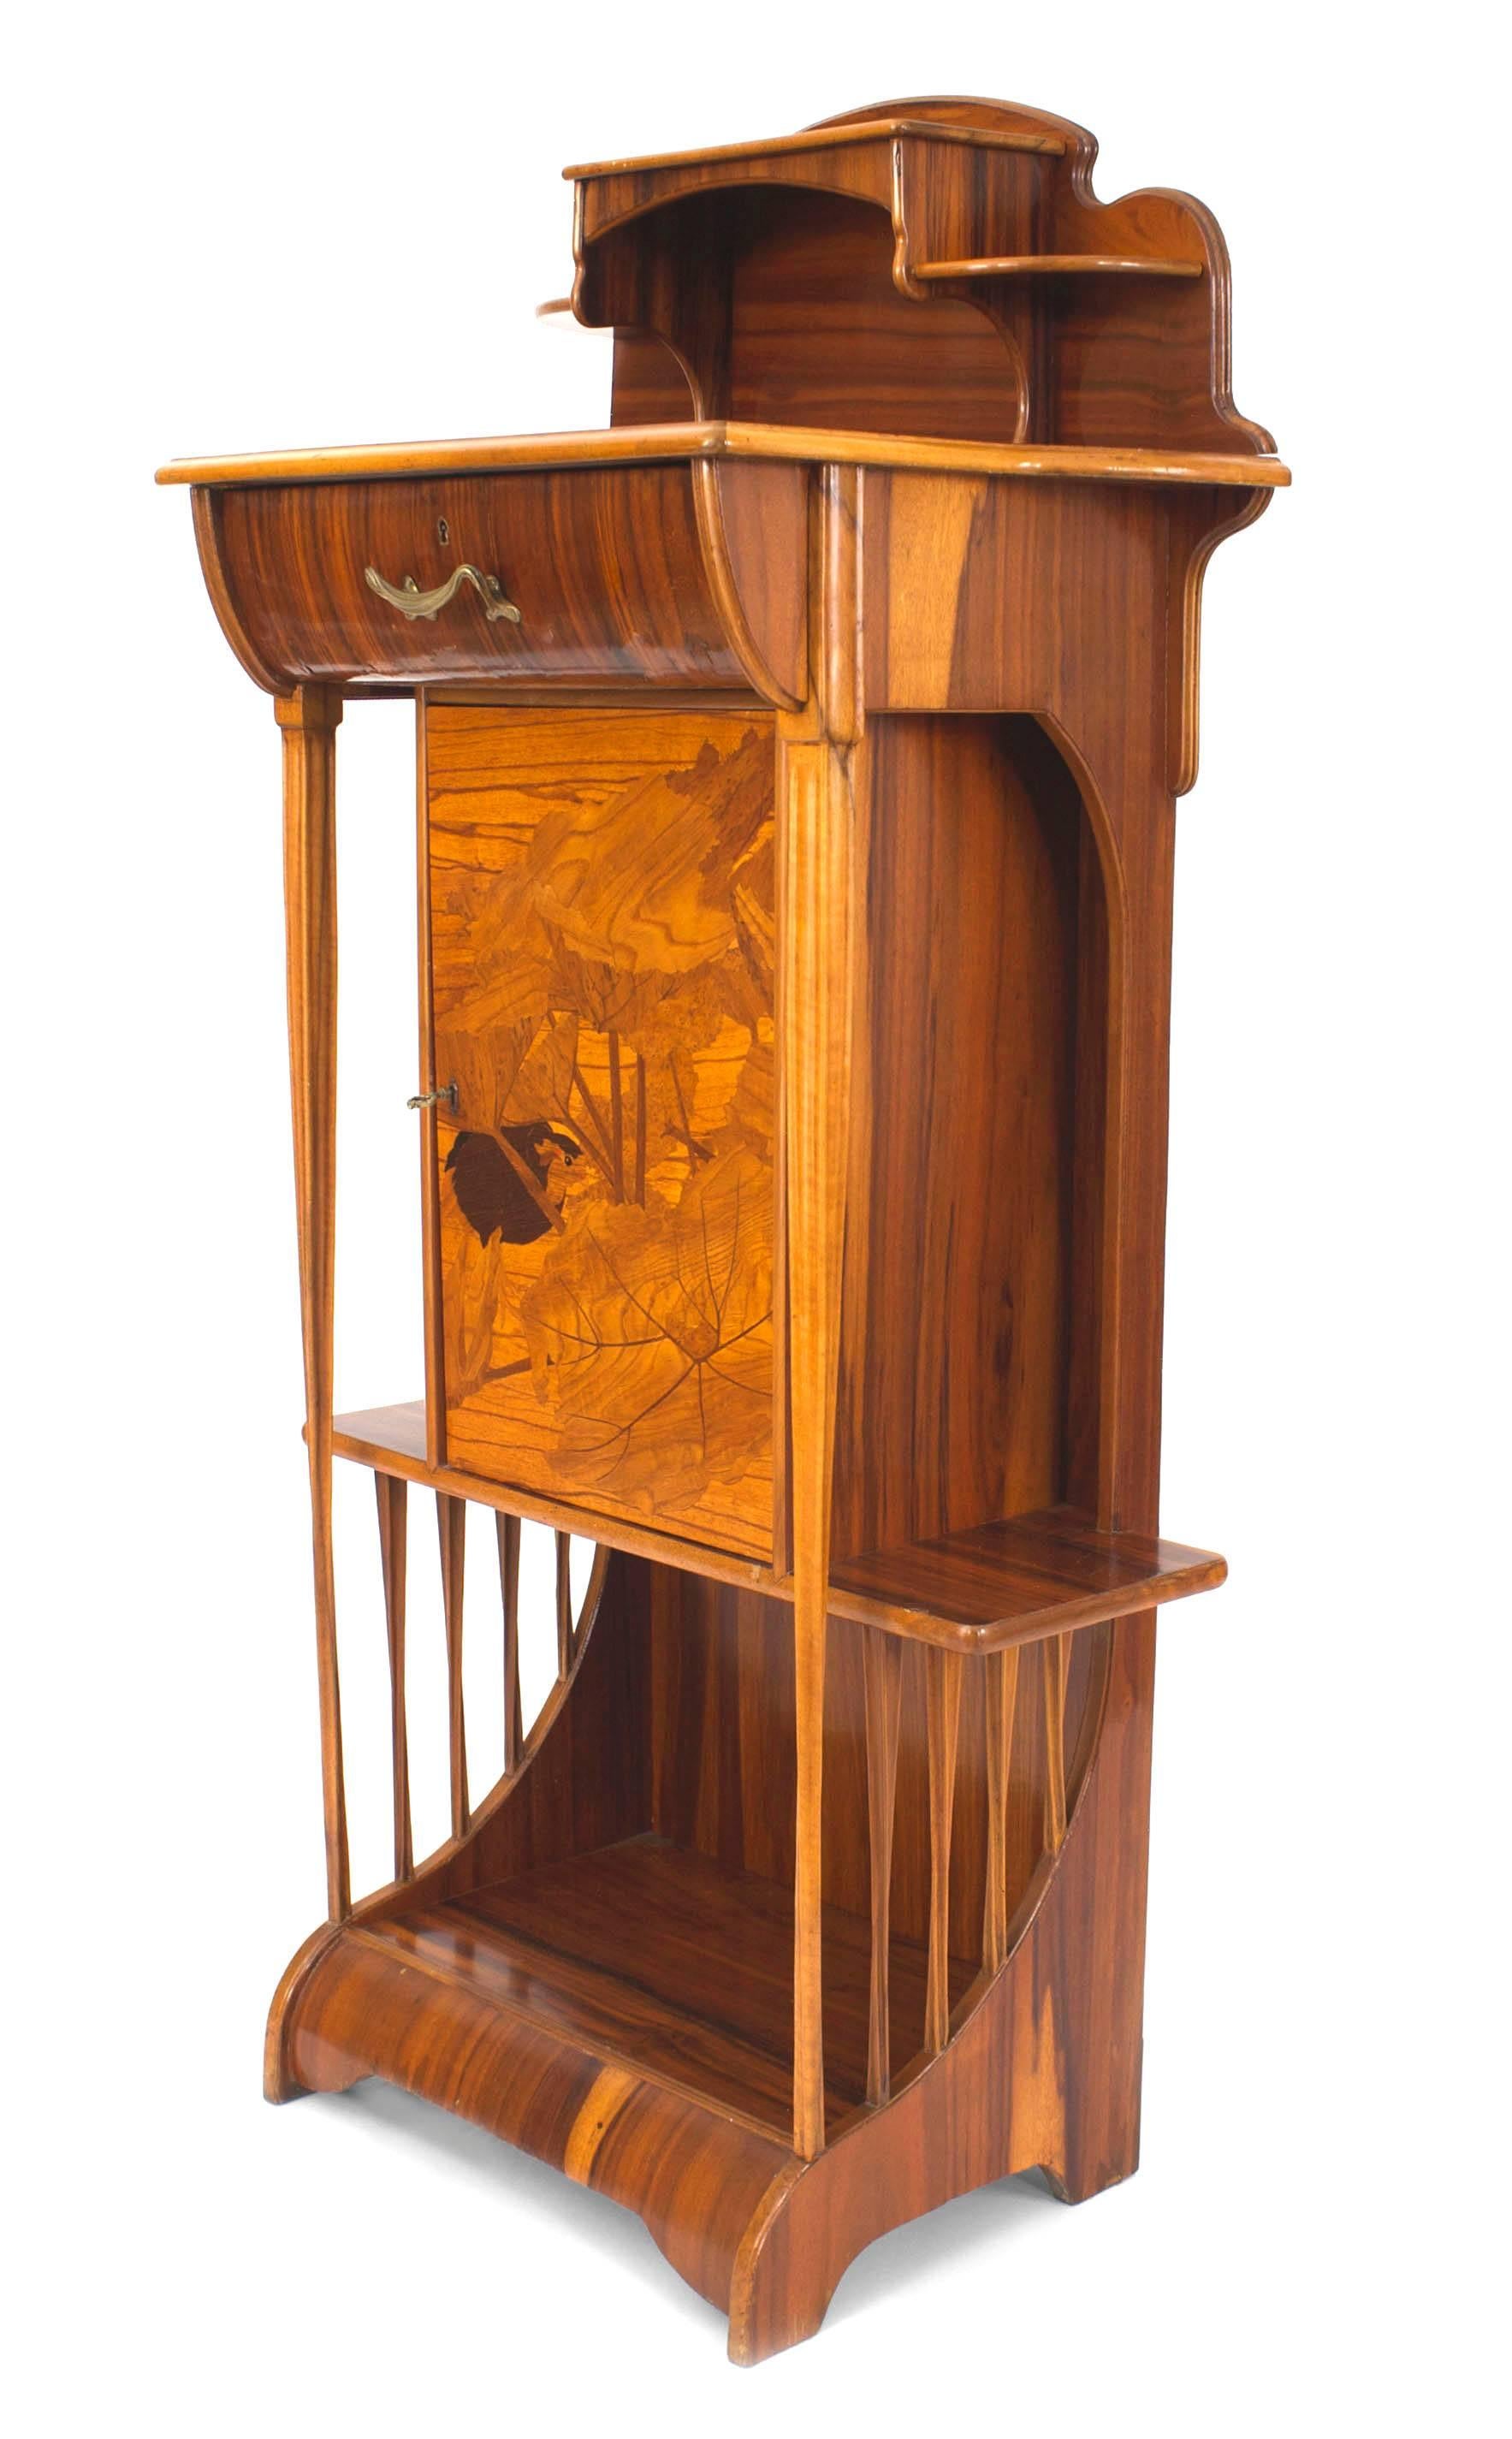 Petit meuble étroit en palissandre de style Art Nouveau, avec une étagère supérieure et inférieure, des étagères latérales, un tiroir et une porte avec une scène d'oiseau et de forêt incrustée. (MAJORELLE)
